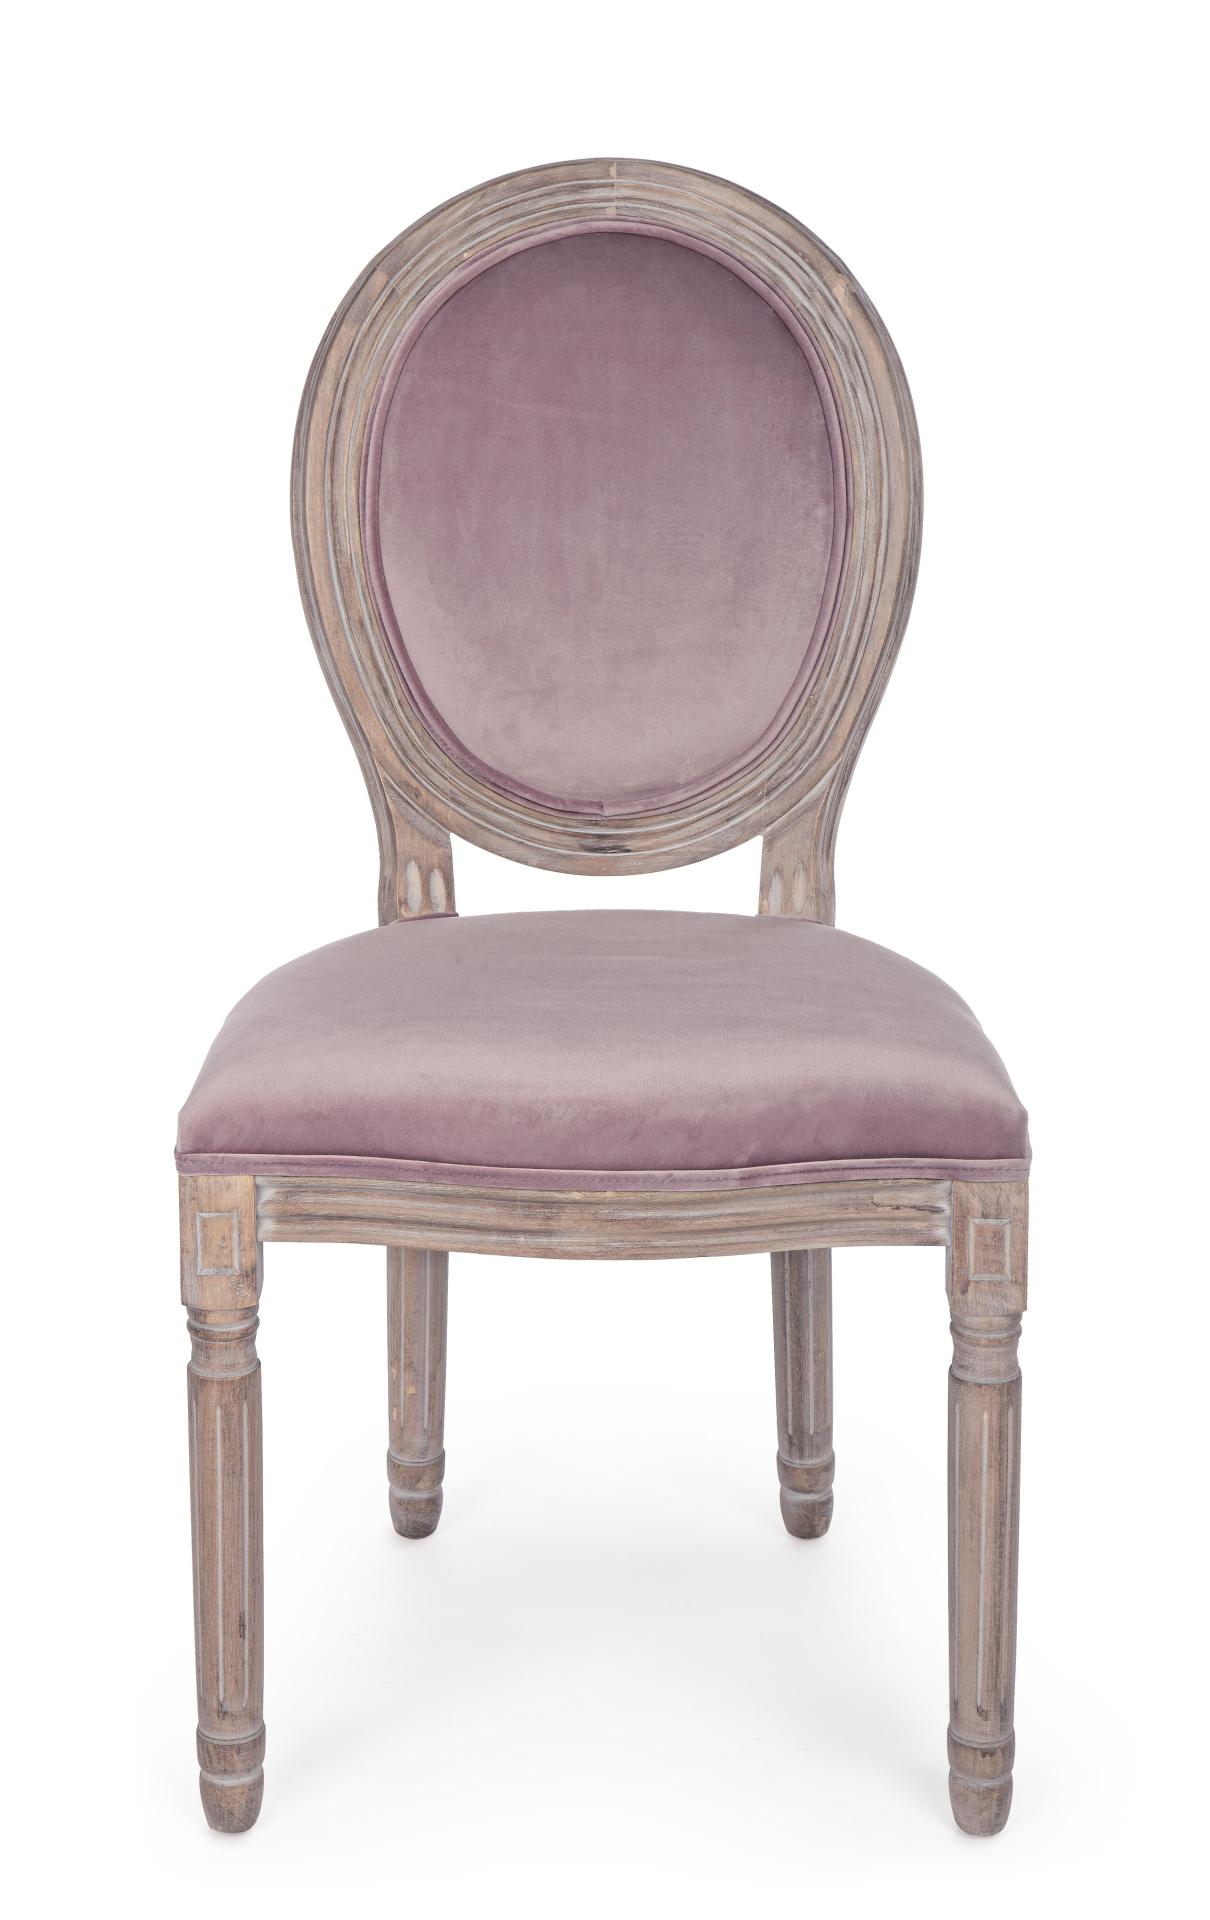 Der Stuhl Mathilde überzeugt mit seinem klassischem Design gefertigt wurde der Stuhl aus Birkenholz, welches natürlich gehalten ist. Die Sitz- und Rückenfläche ist aus einem Stoff-Bezug, welcher einen rosa Farbton besitzt und in einer Samt-Optik ist. Die 